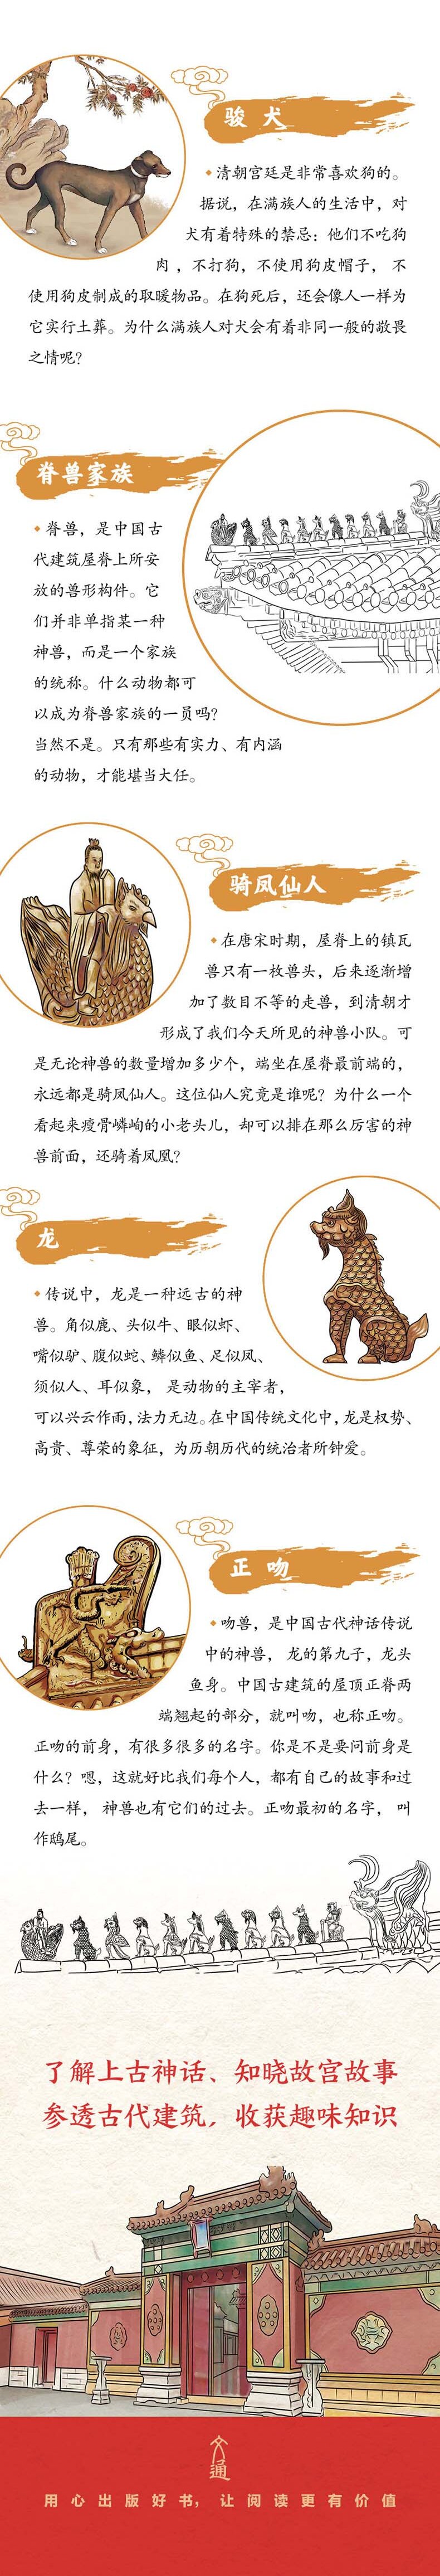 北京故宫传说神话图片